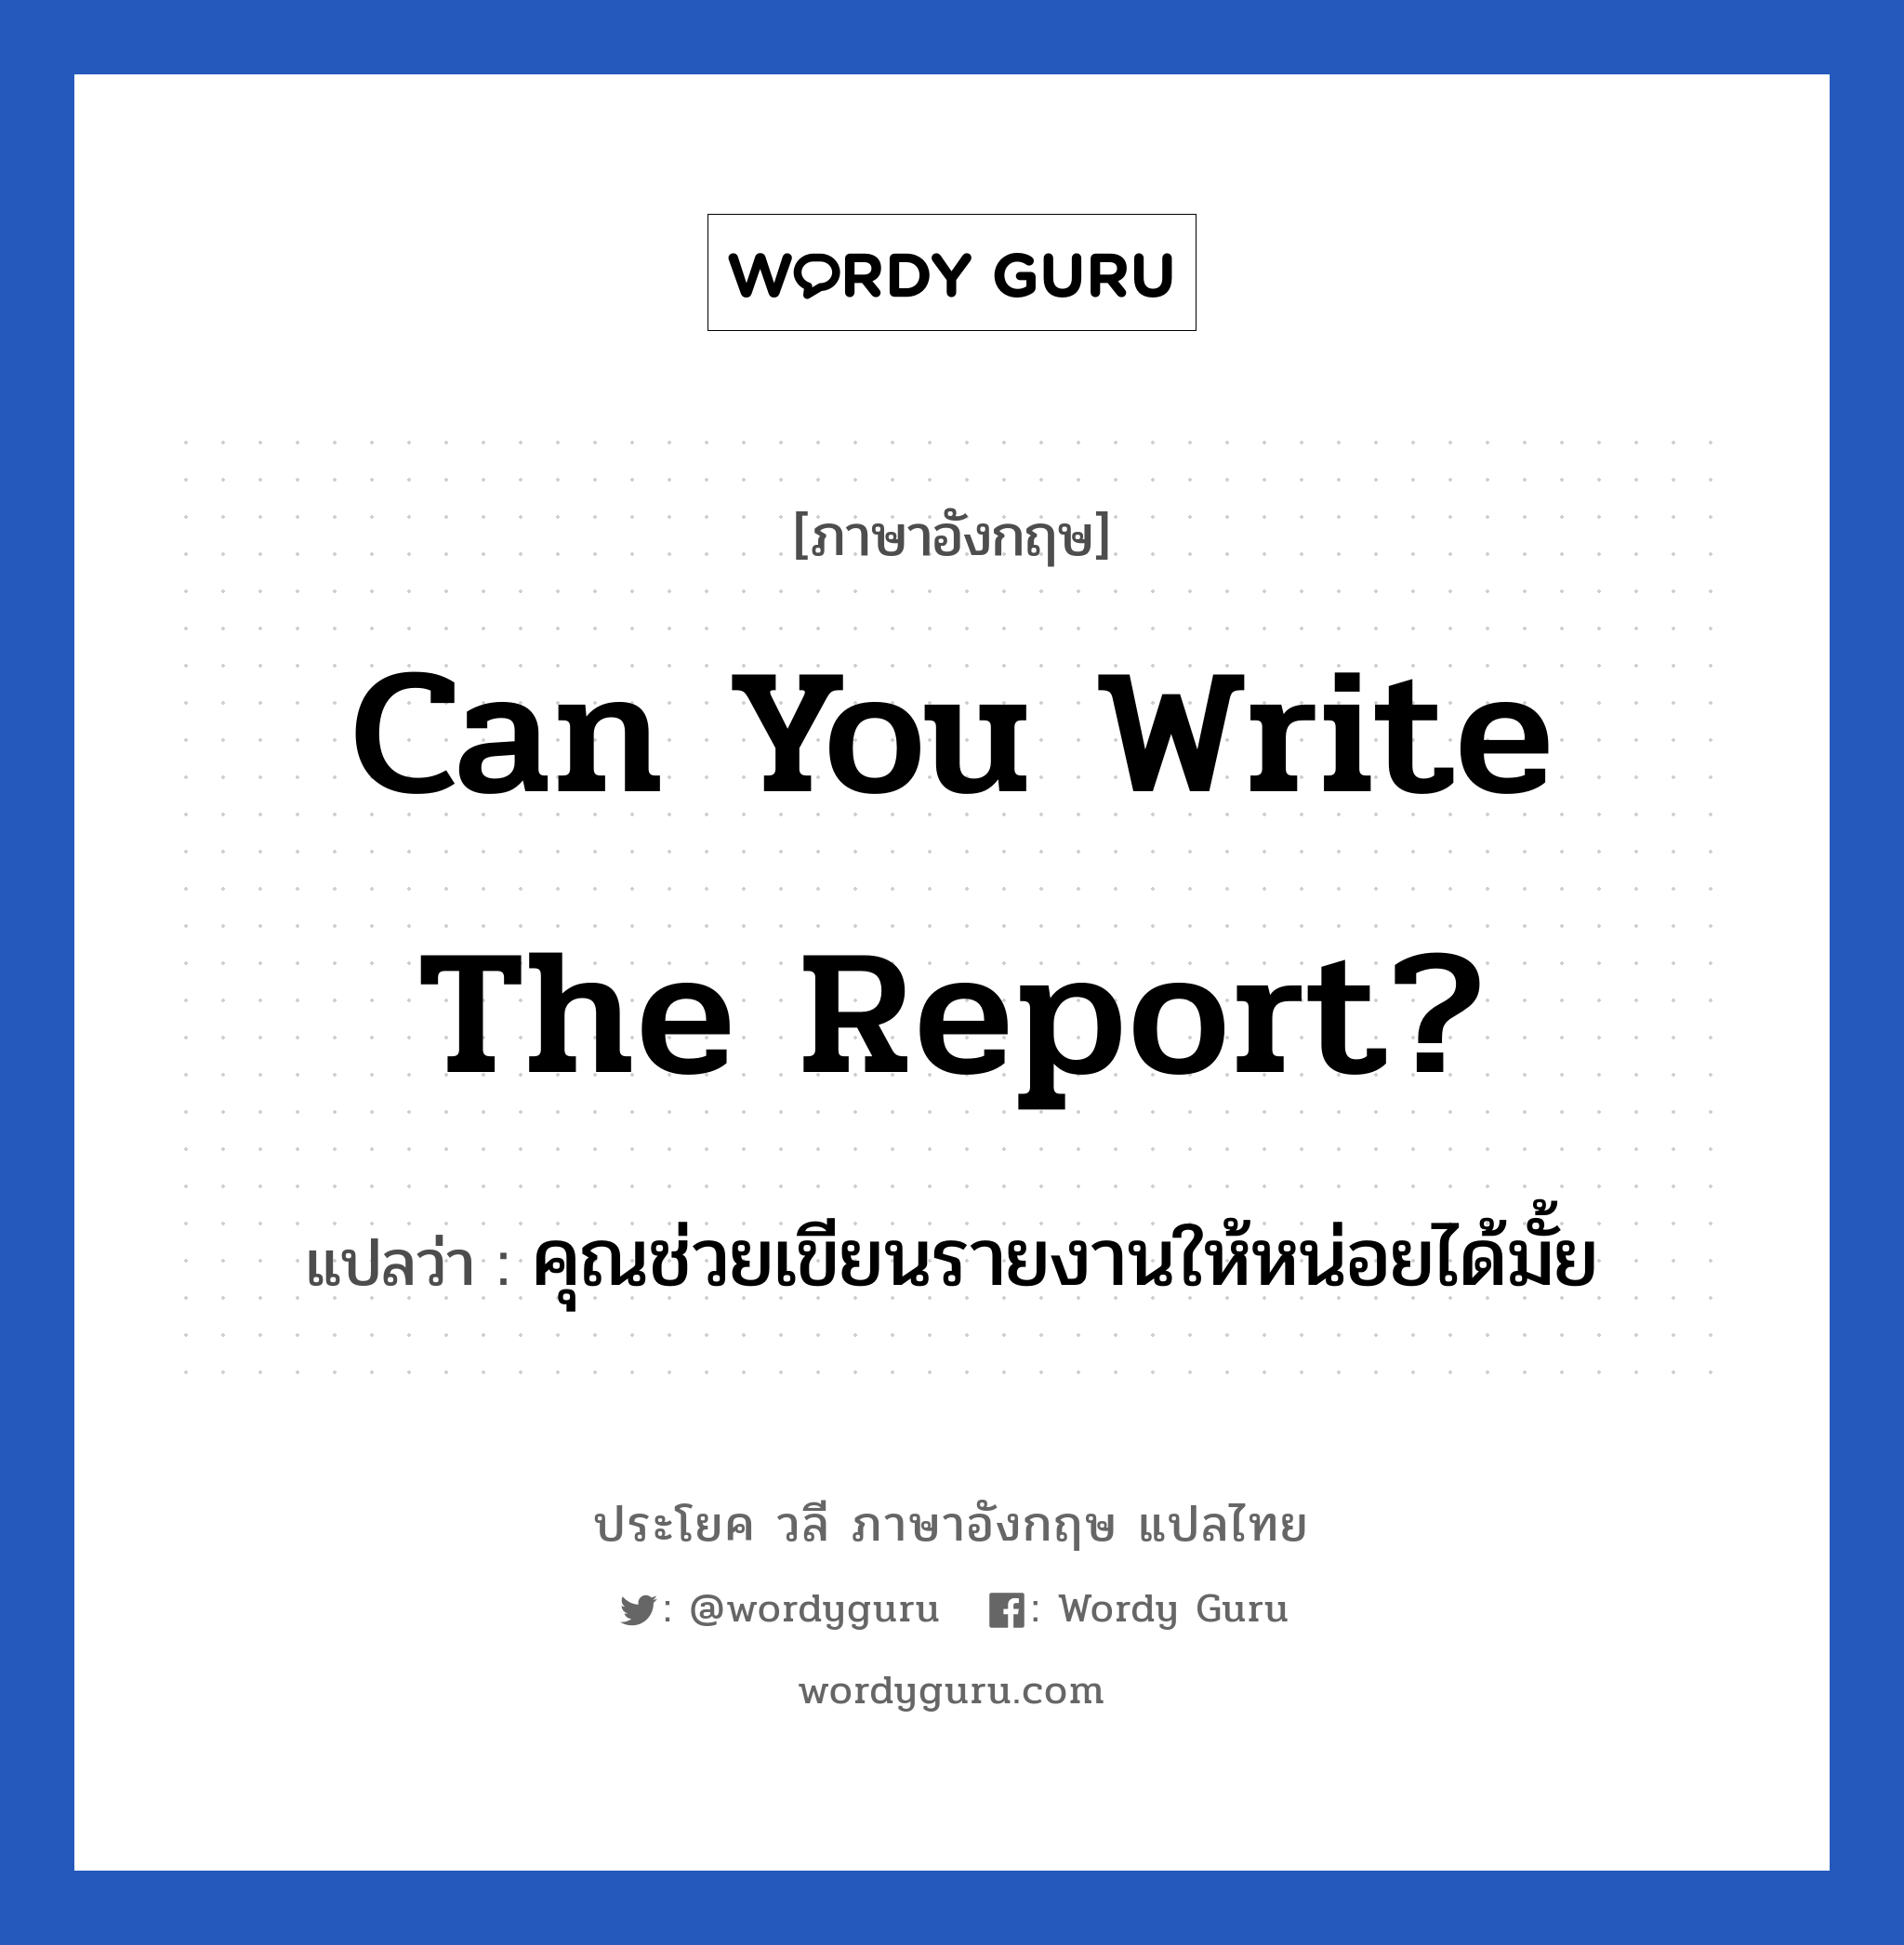 Can you write the report? แปลว่า? เป็นประโยคในกลุ่มประเภท ในที่ทำงาน, วลีภาษาอังกฤษ Can you write the report? แปลว่า คุณช่วยเขียนรายงานให้หน่อยได้มั้ย หมวด ในที่ทำงาน